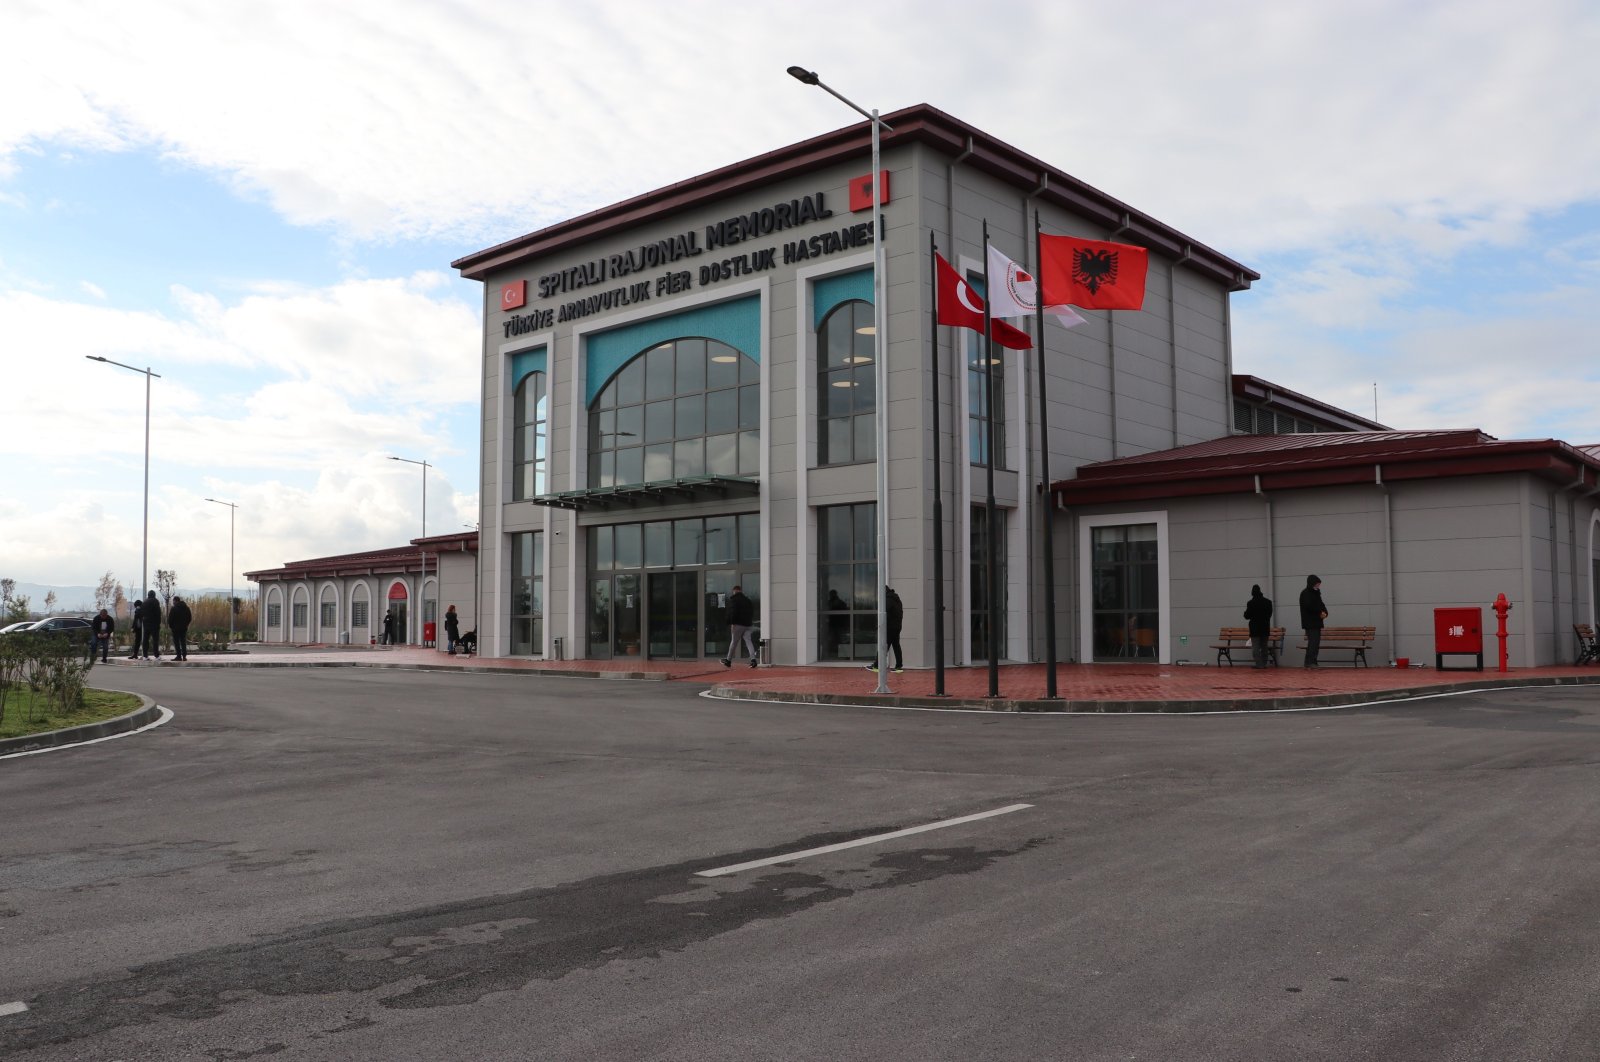 The Turkey-Albania Fier Regional Hospital, built by Turkey, in Tirana, Albania, Dec. 29, 2021. (IHA Photo)